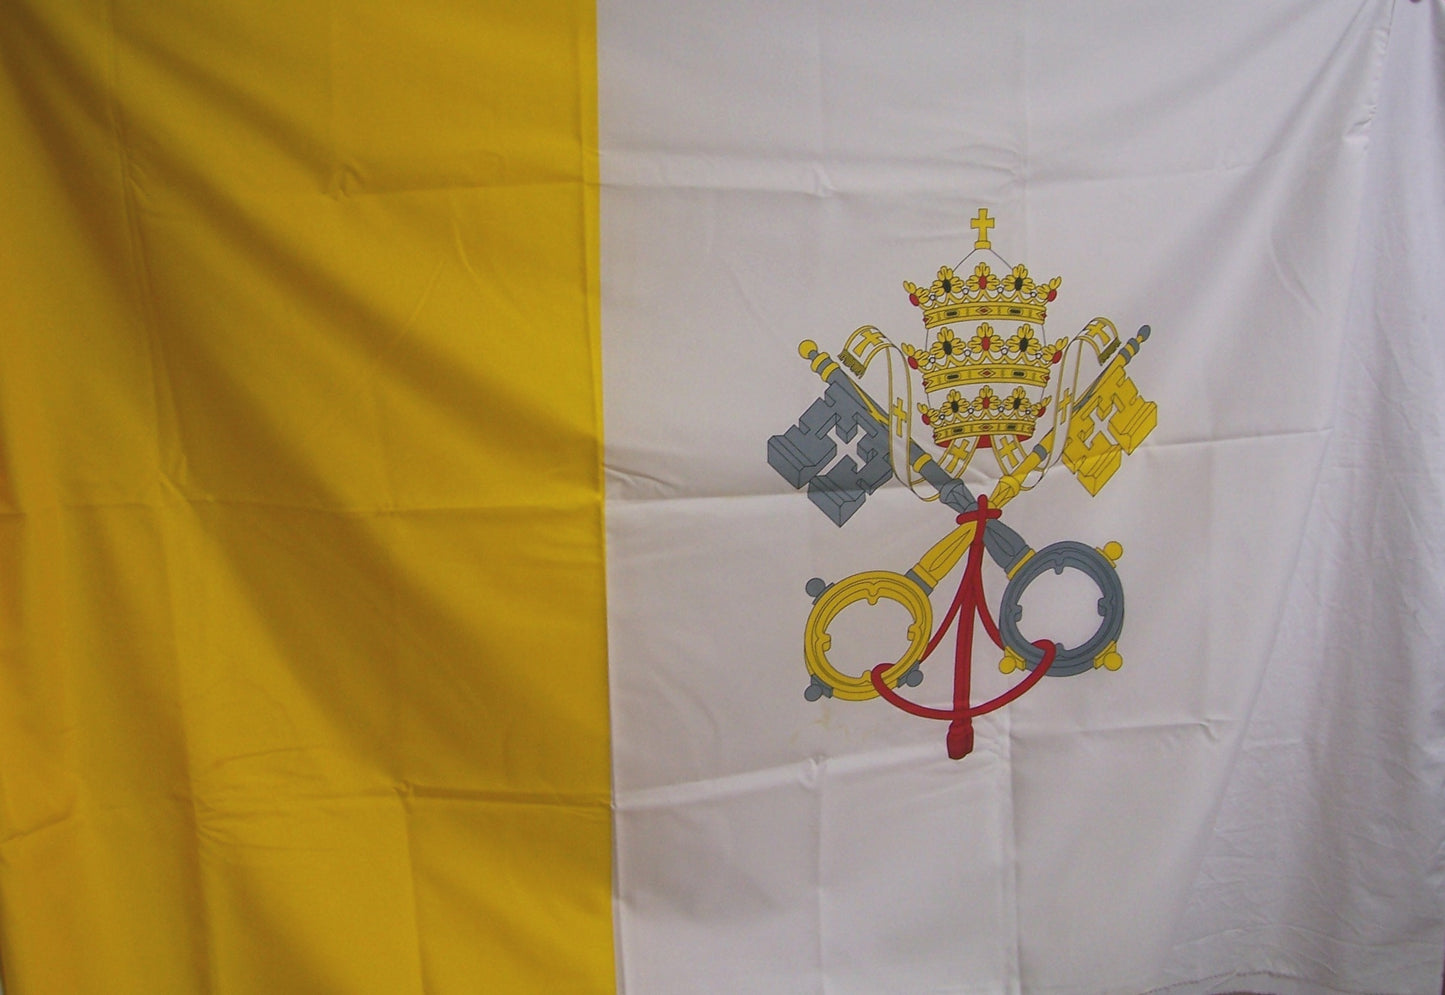 Bandiera del Vaticano